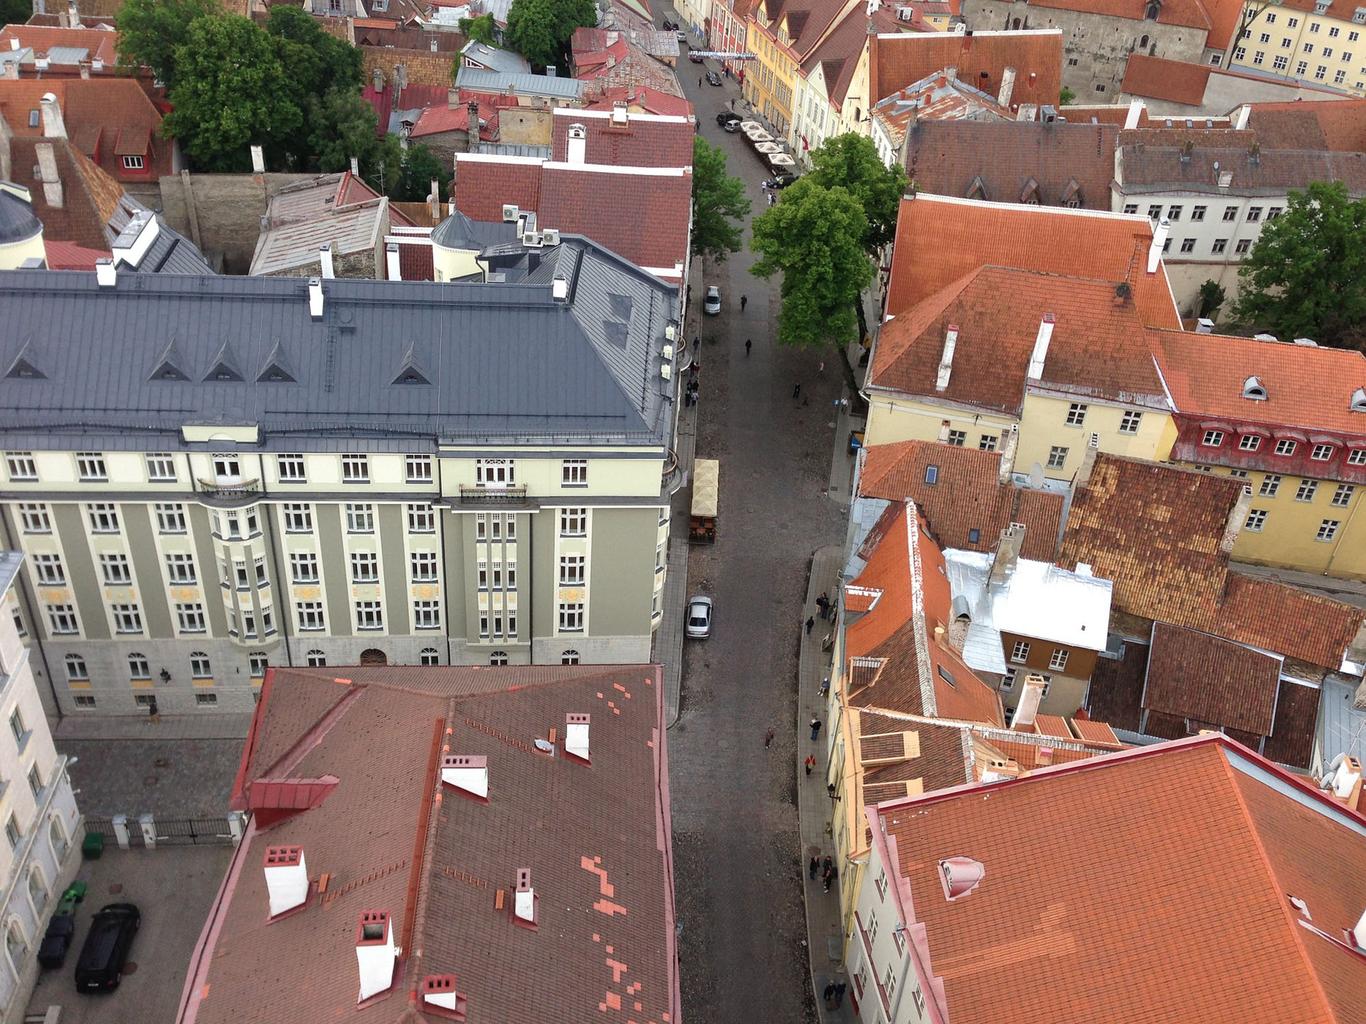 Kinnisvaraturg jätkab Eesti tähtsamates linnades stabiilselt ...